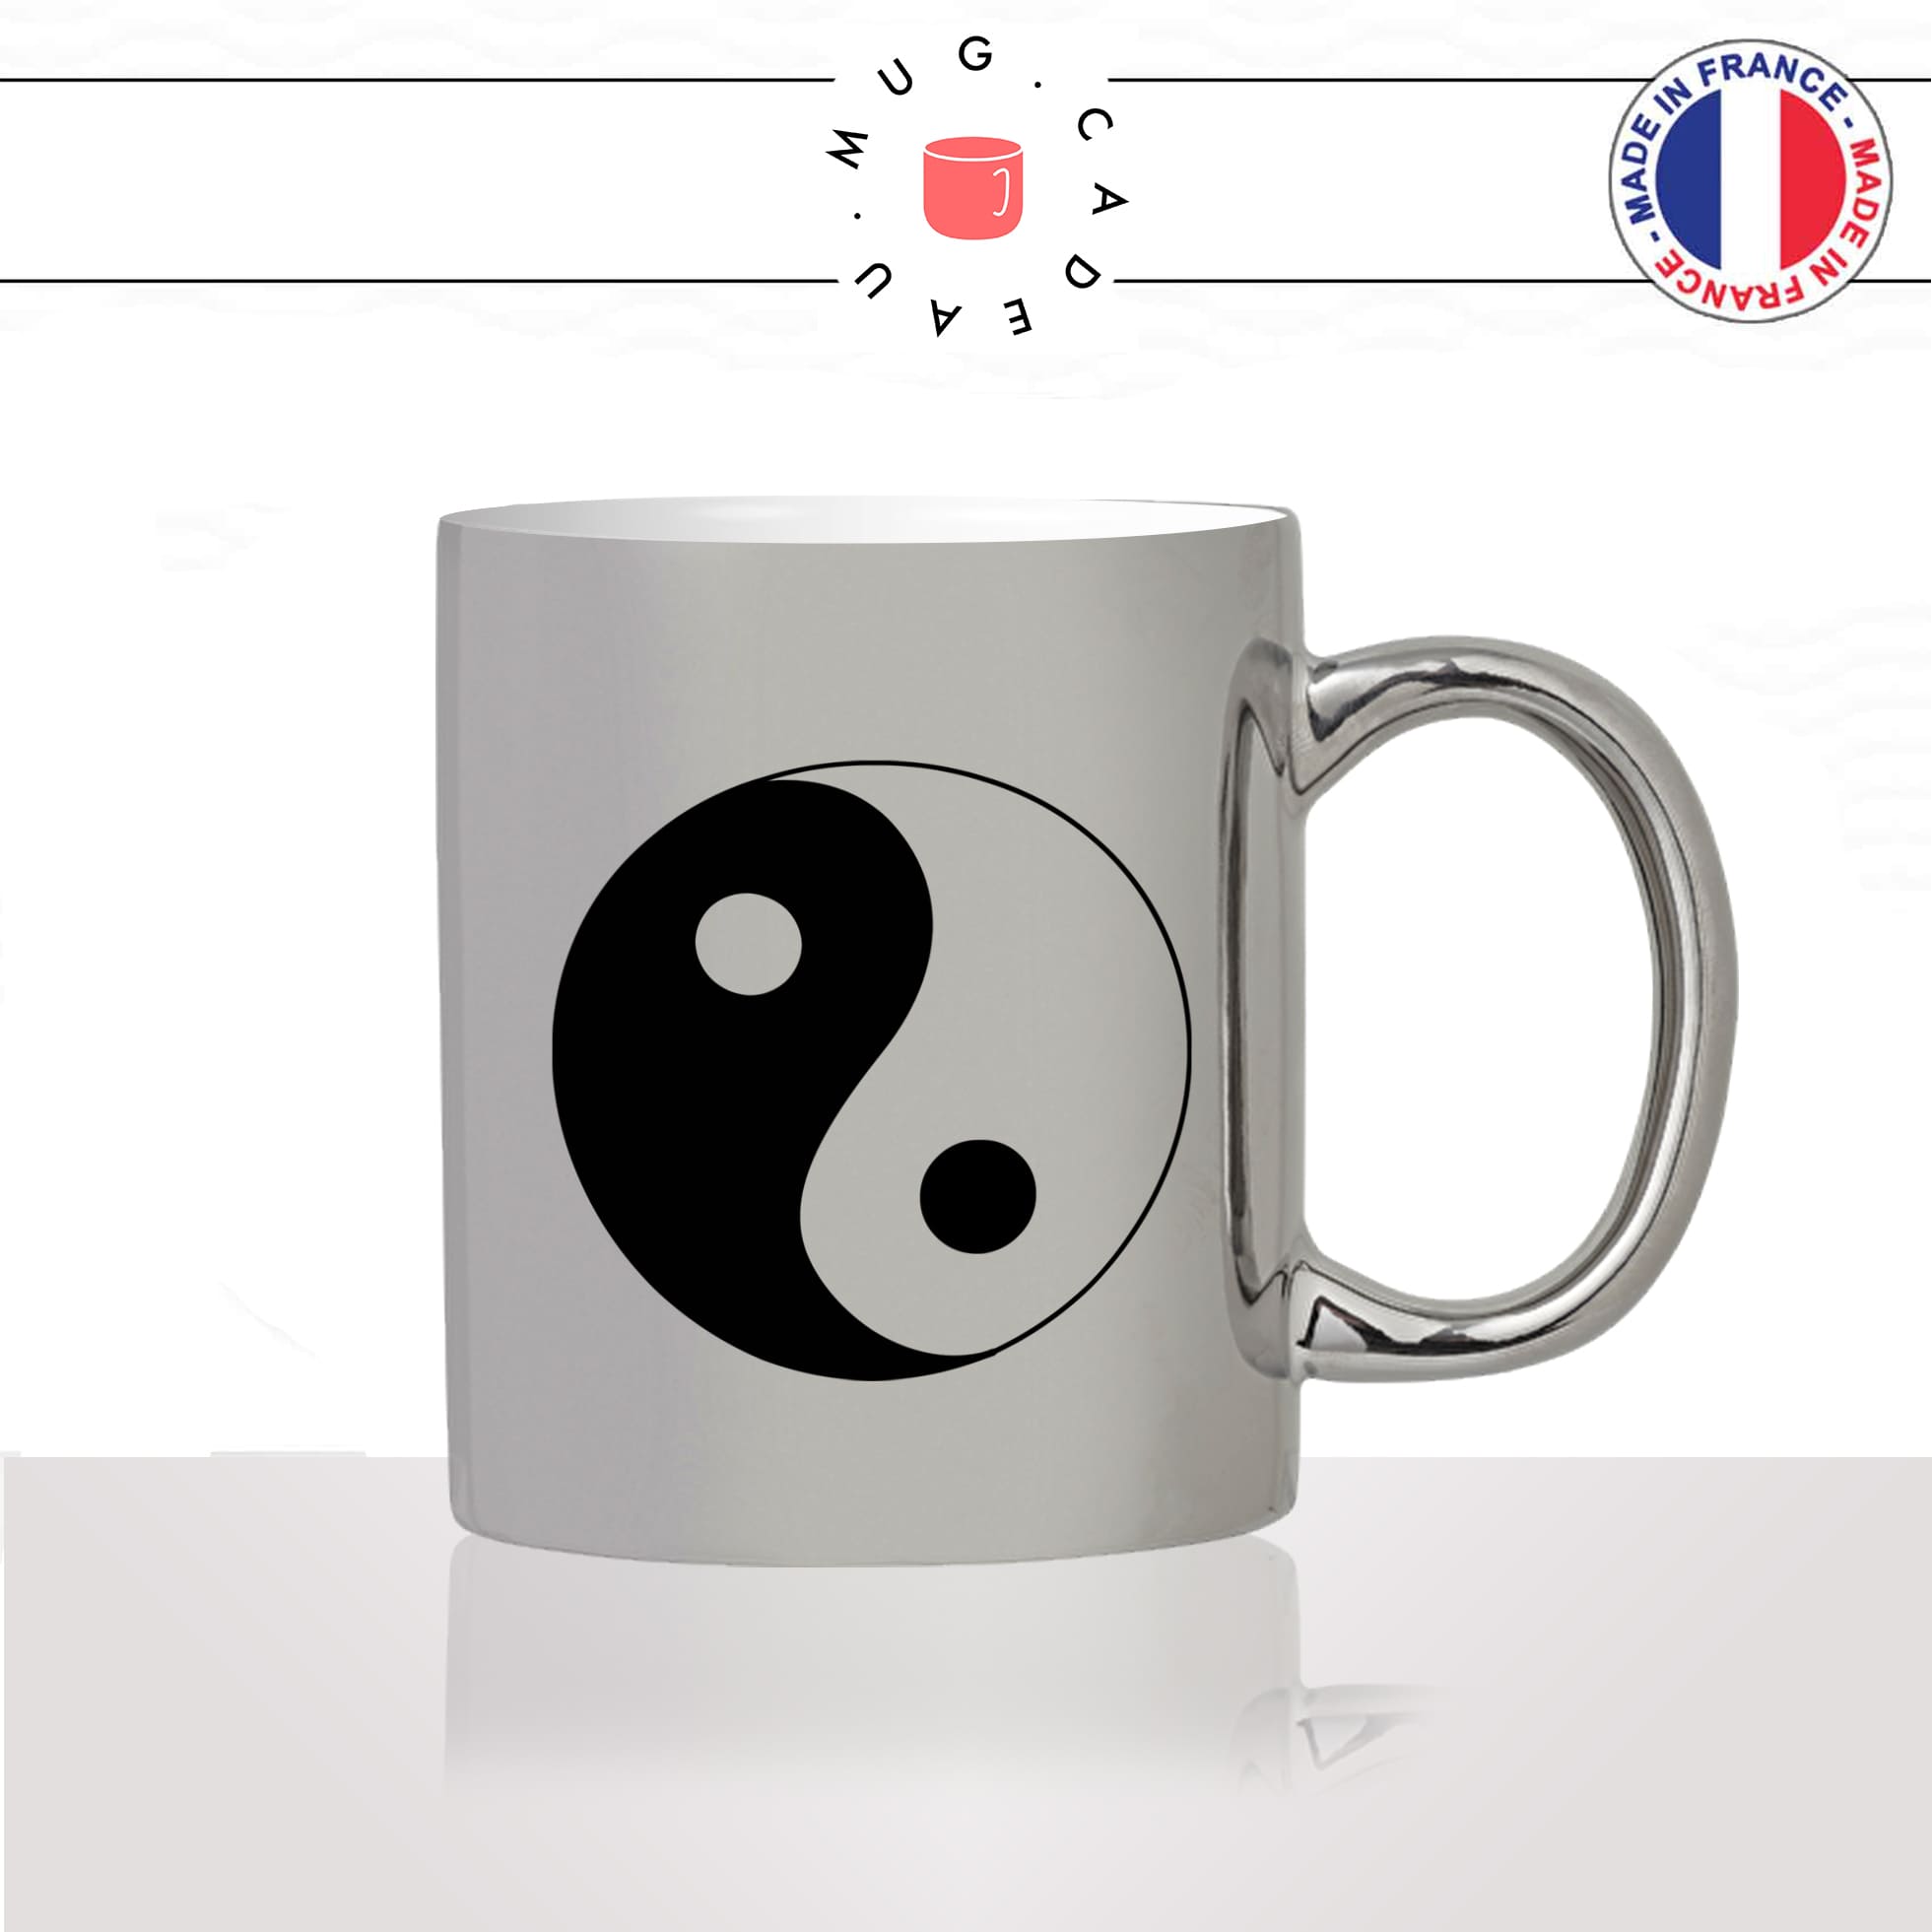 mug-tasse-argent-argenté-silver-dessin-religion-yin-yang-bouddha-bouddhiste-amour-paix-couple-noir-blanc-idée-cadeau-fun-cool-café-thé2